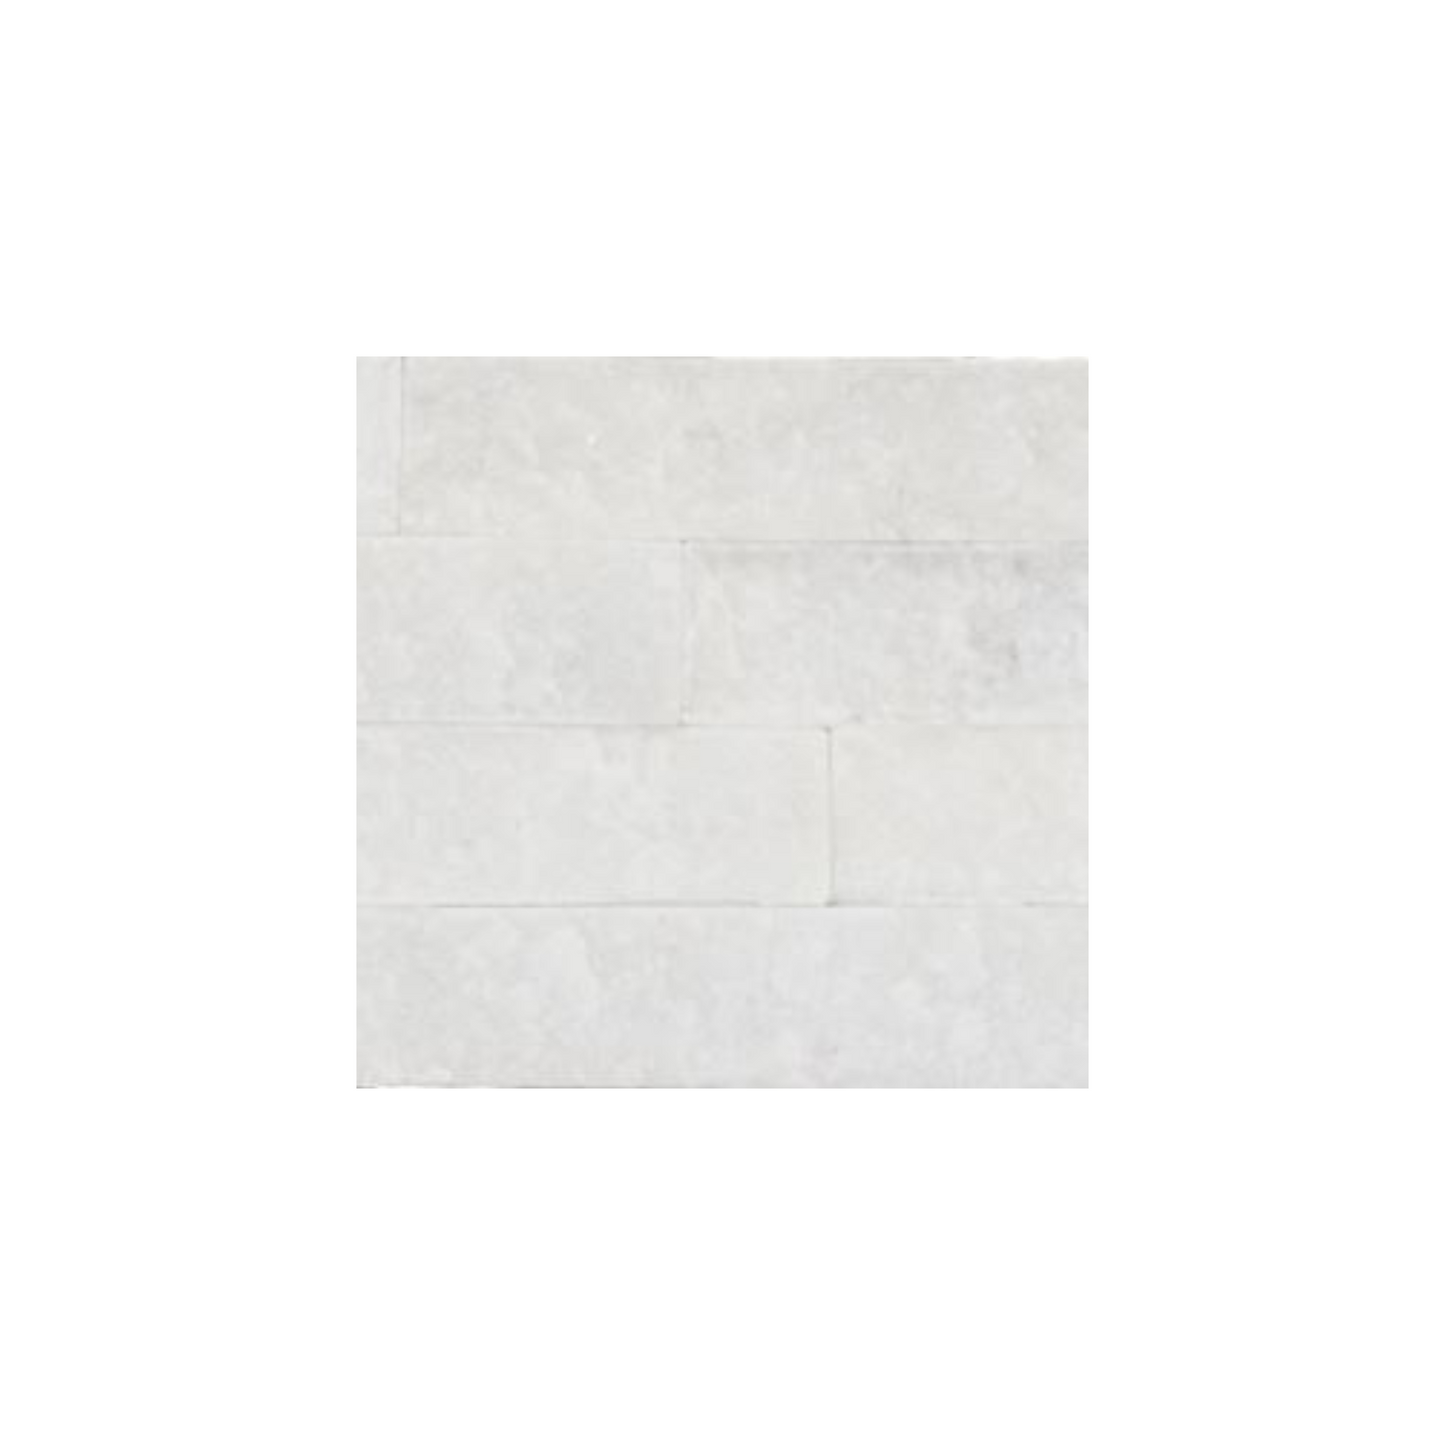 Split Face Tiles | White Pearl Cladding | Sample 100 x 100mm